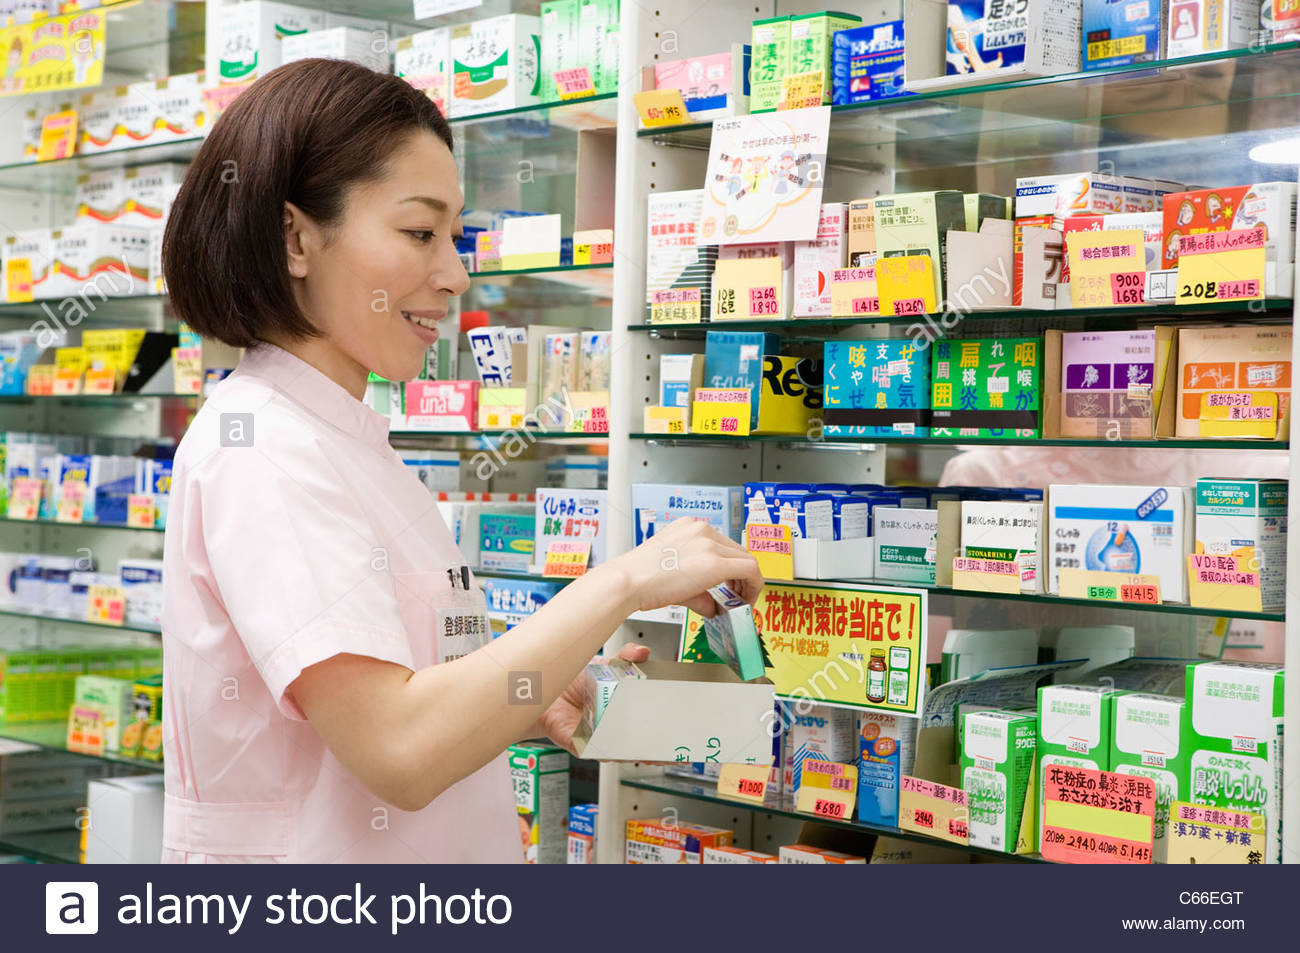 Доставка лекарств – топ-10 лучших интернет-аптек, цены и условия